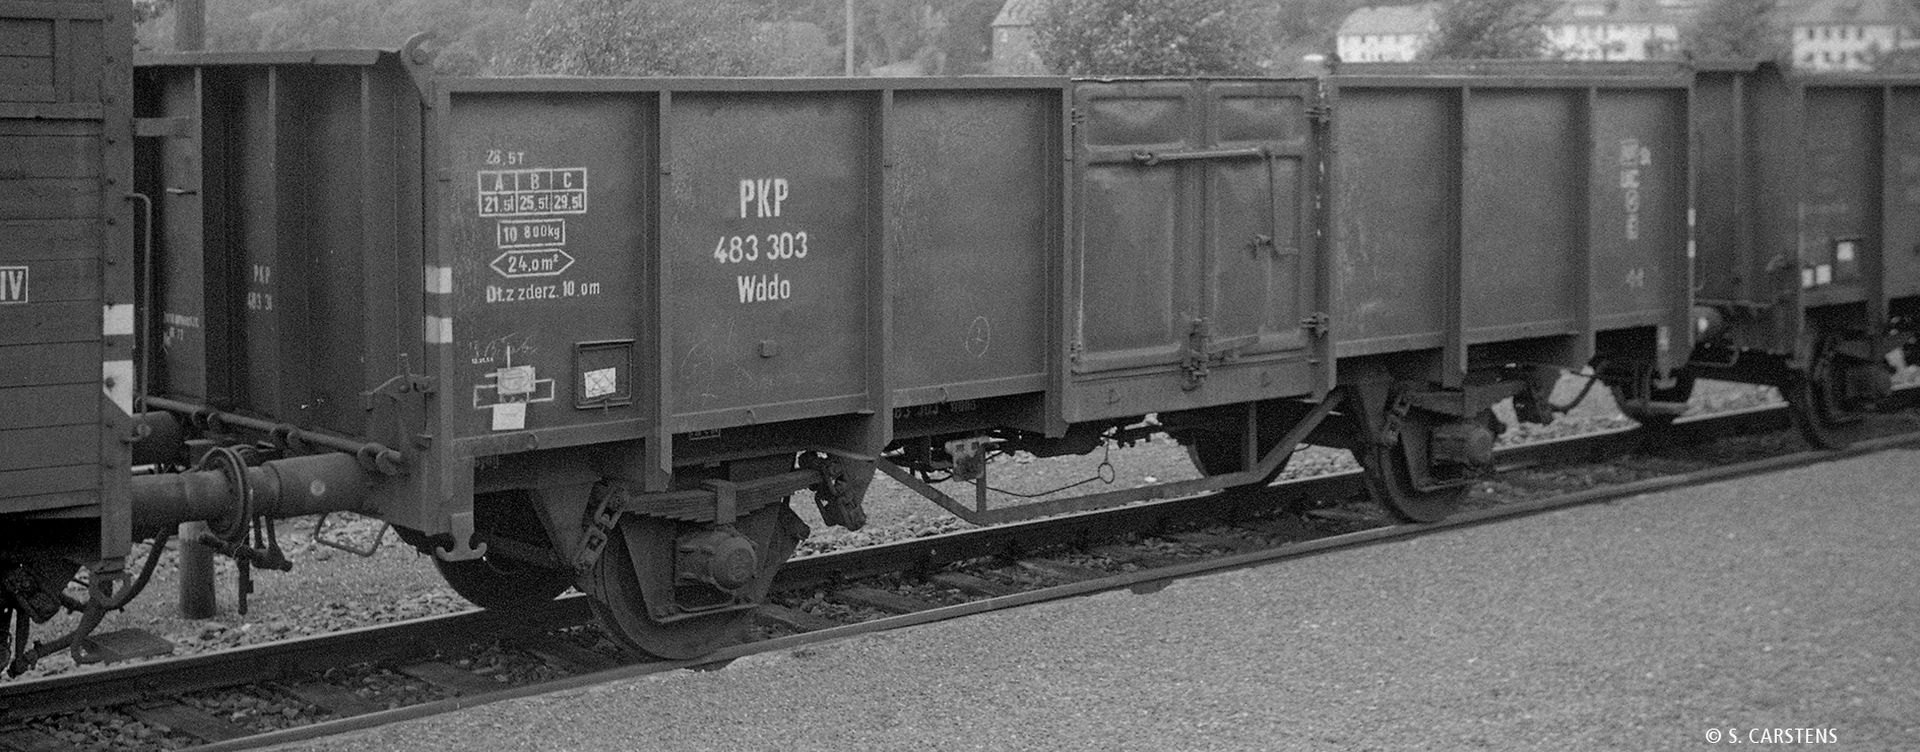 Brawa 50079 - Offener Güterwagen Wddo, PKP, Ep.III